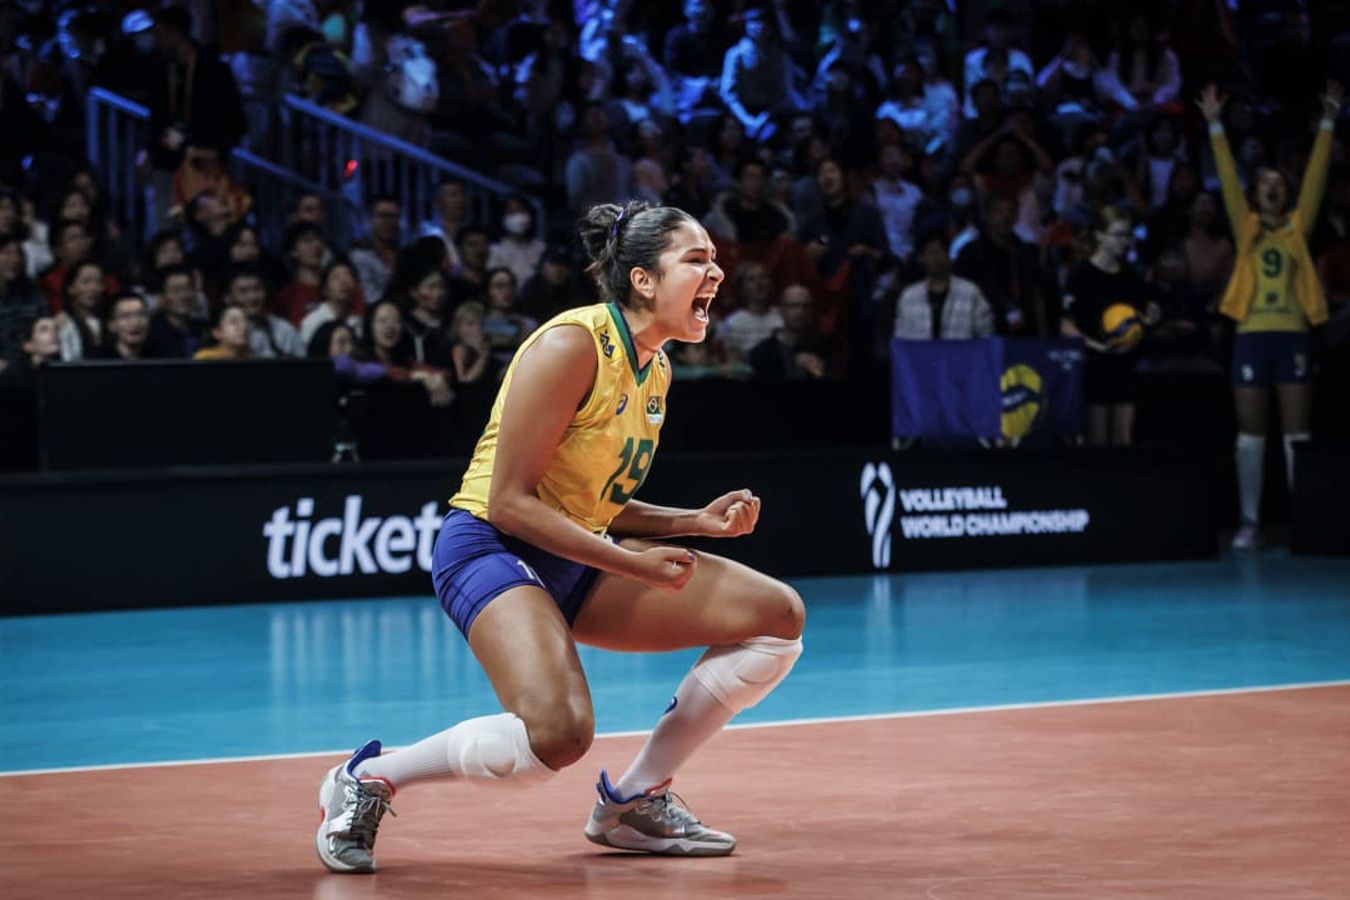 Бразилия расправилась с Нидерландами на ЧМ по волейболу среди женщин - Чемпионат